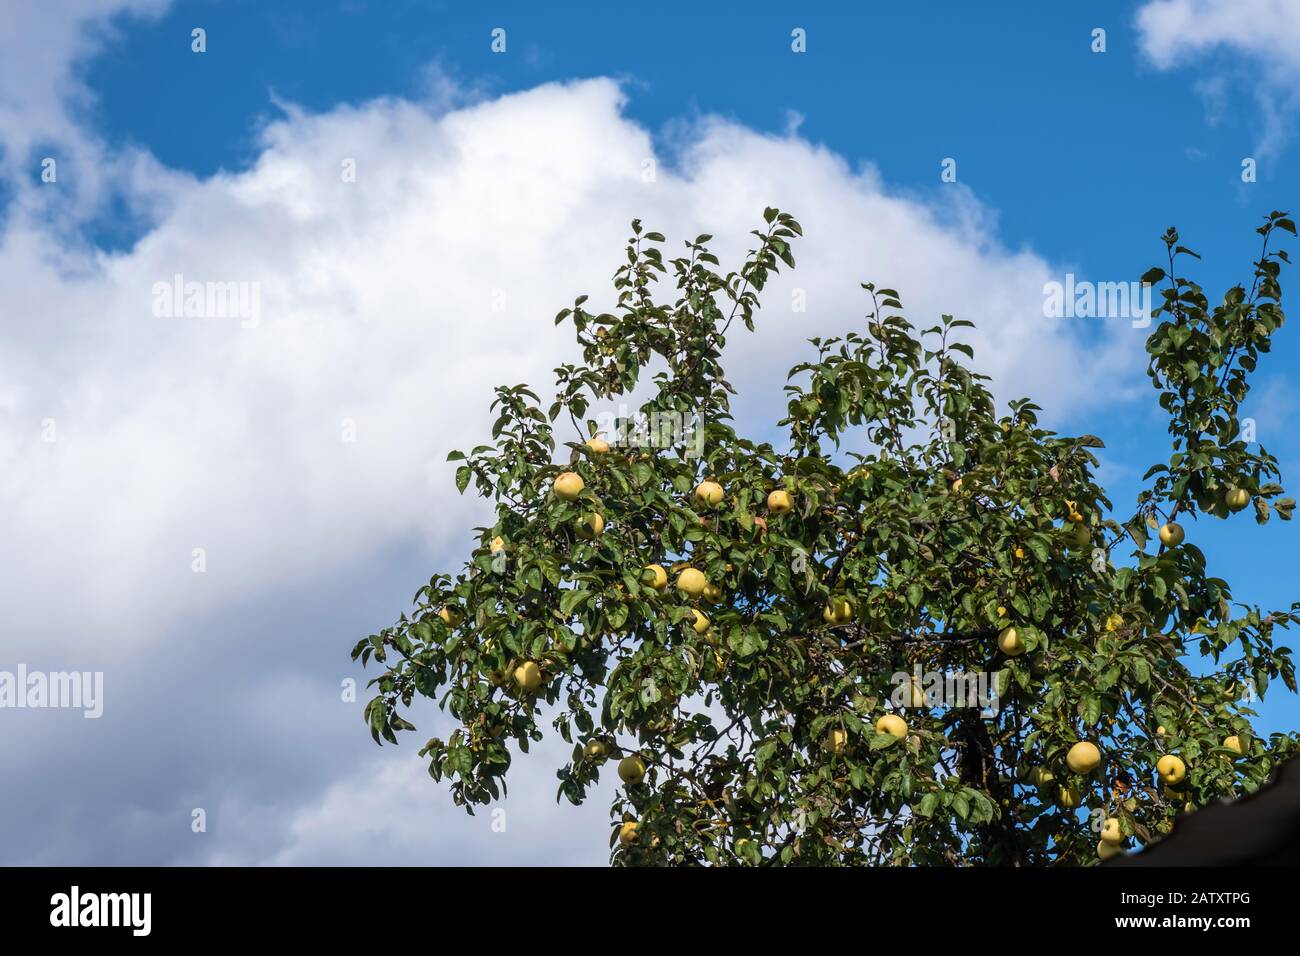 La parte superiore dell'albero della mela con i lotti delle mele contro una nube leggera nella luce del sole. Foto Stock